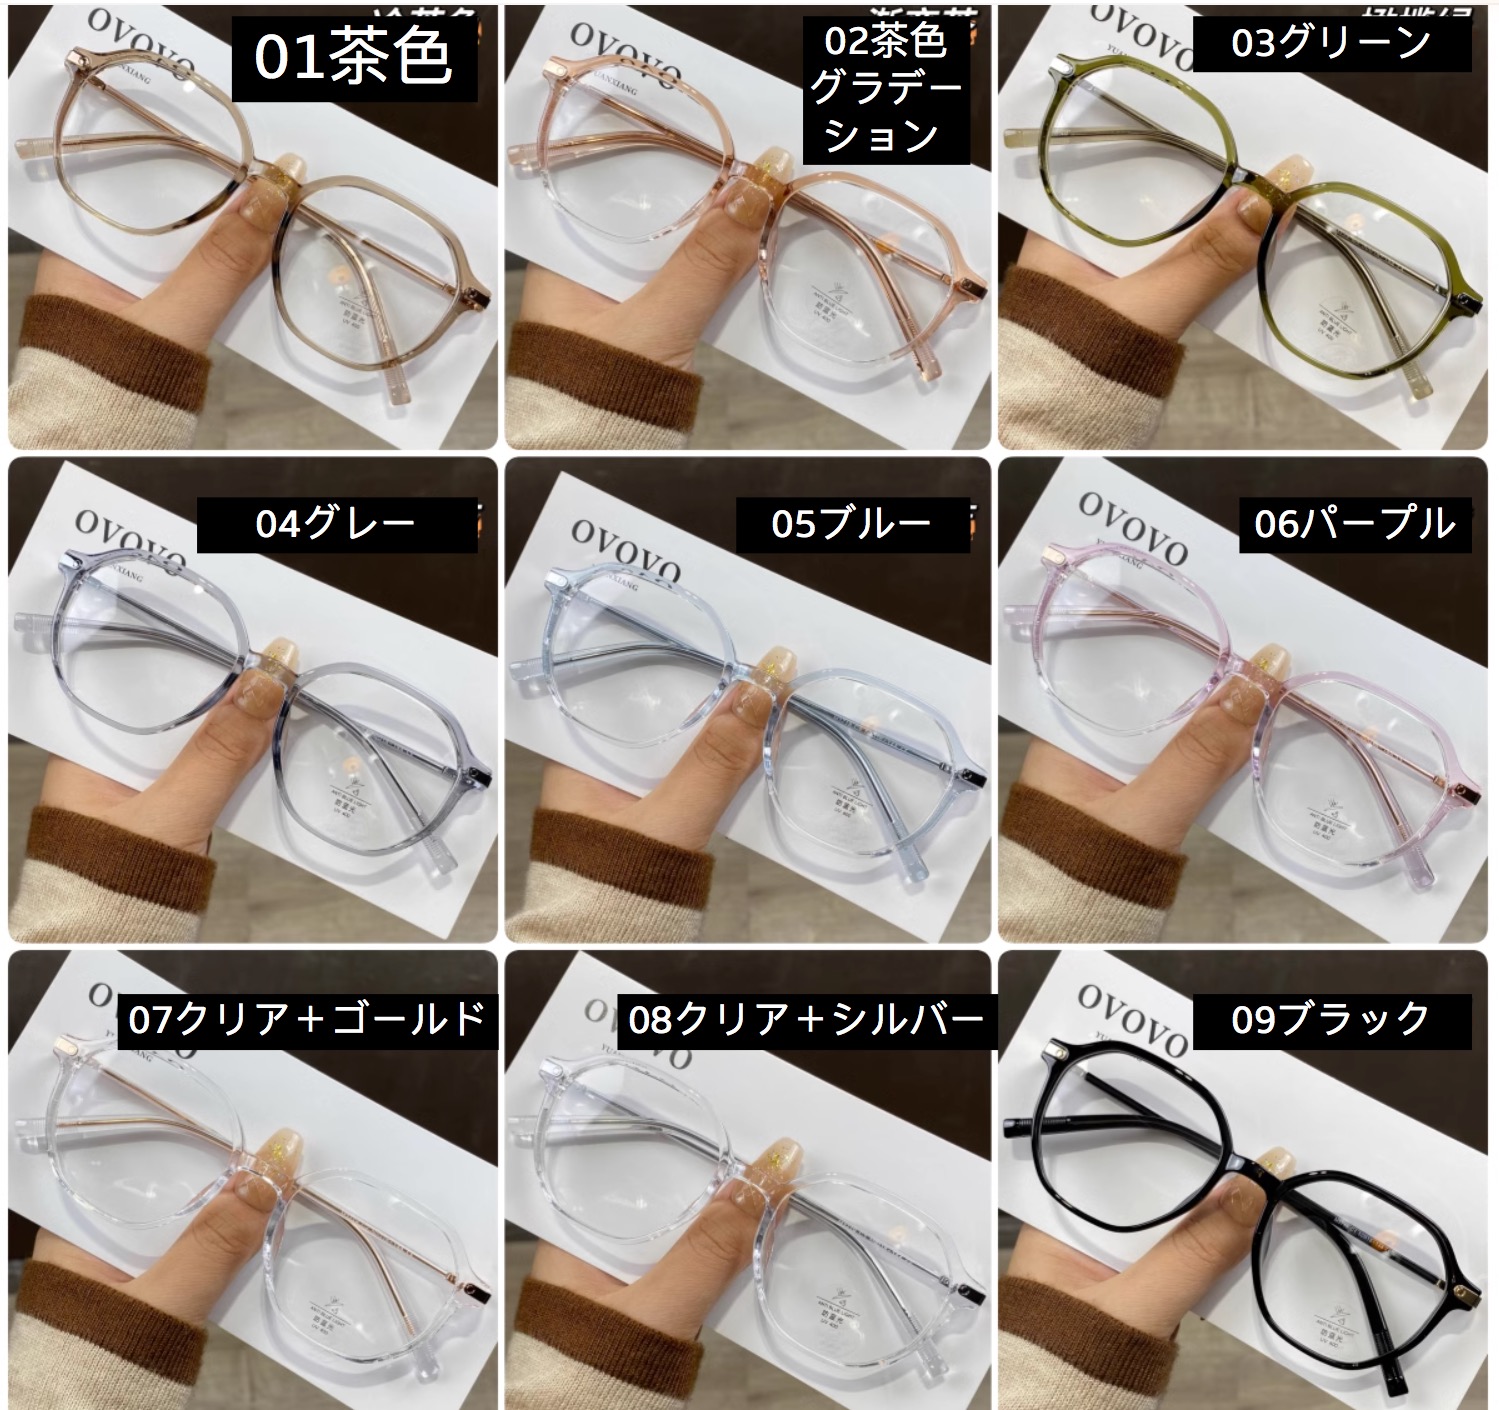 メガネ 通販ラインストーン可愛いメガネ横浜 眼鏡 安い度付きレンズ